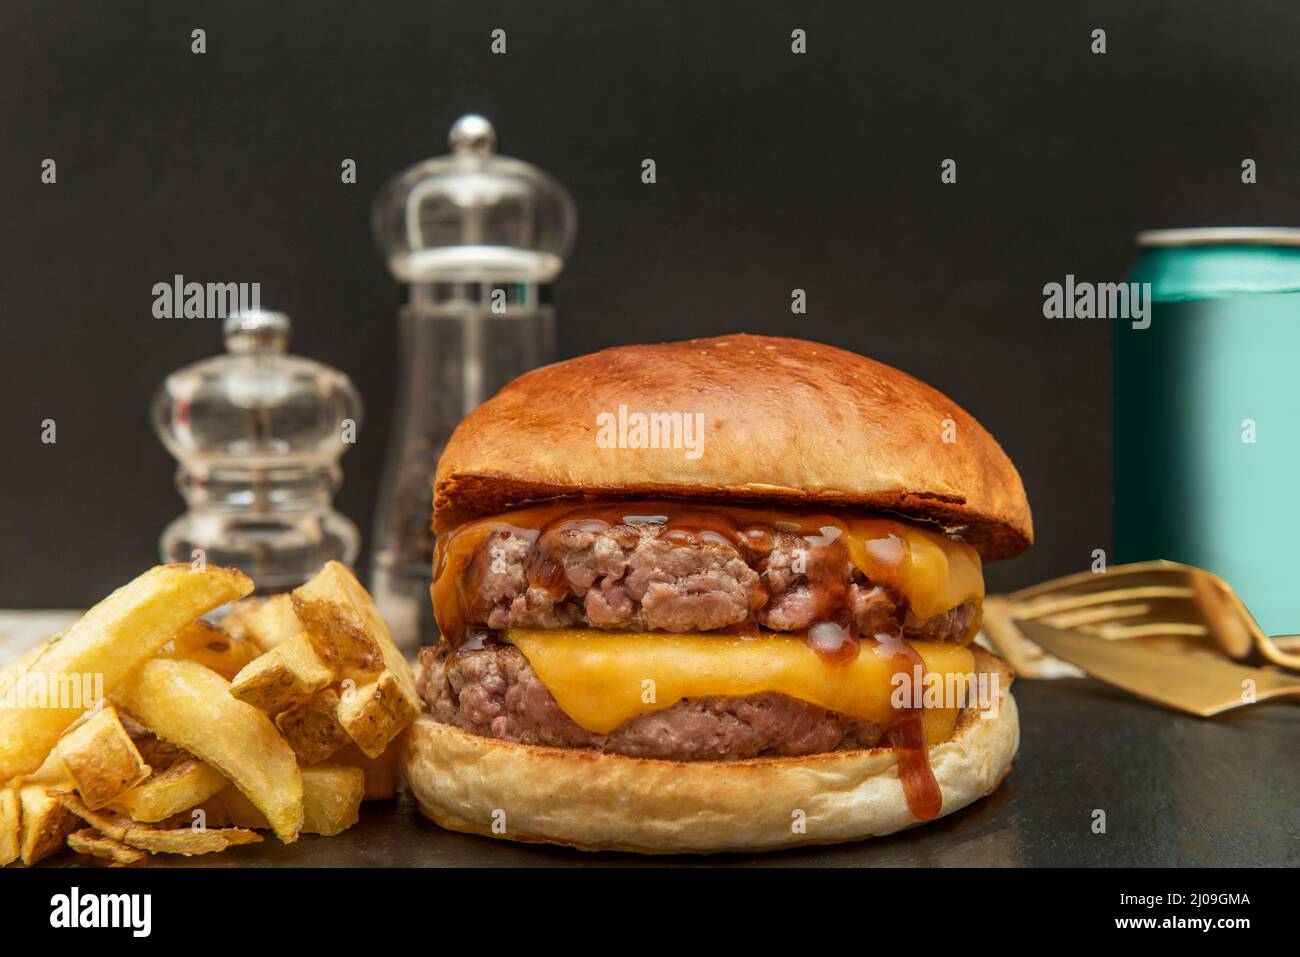 Der Double Cheeseburger mit zwei Fleischstücken gewürzt mit einem Schuss Salz und Pfeffer Ketchup, Senf und zwei Stücken geschmolzenem amerikanischen Käse mit Stockfoto